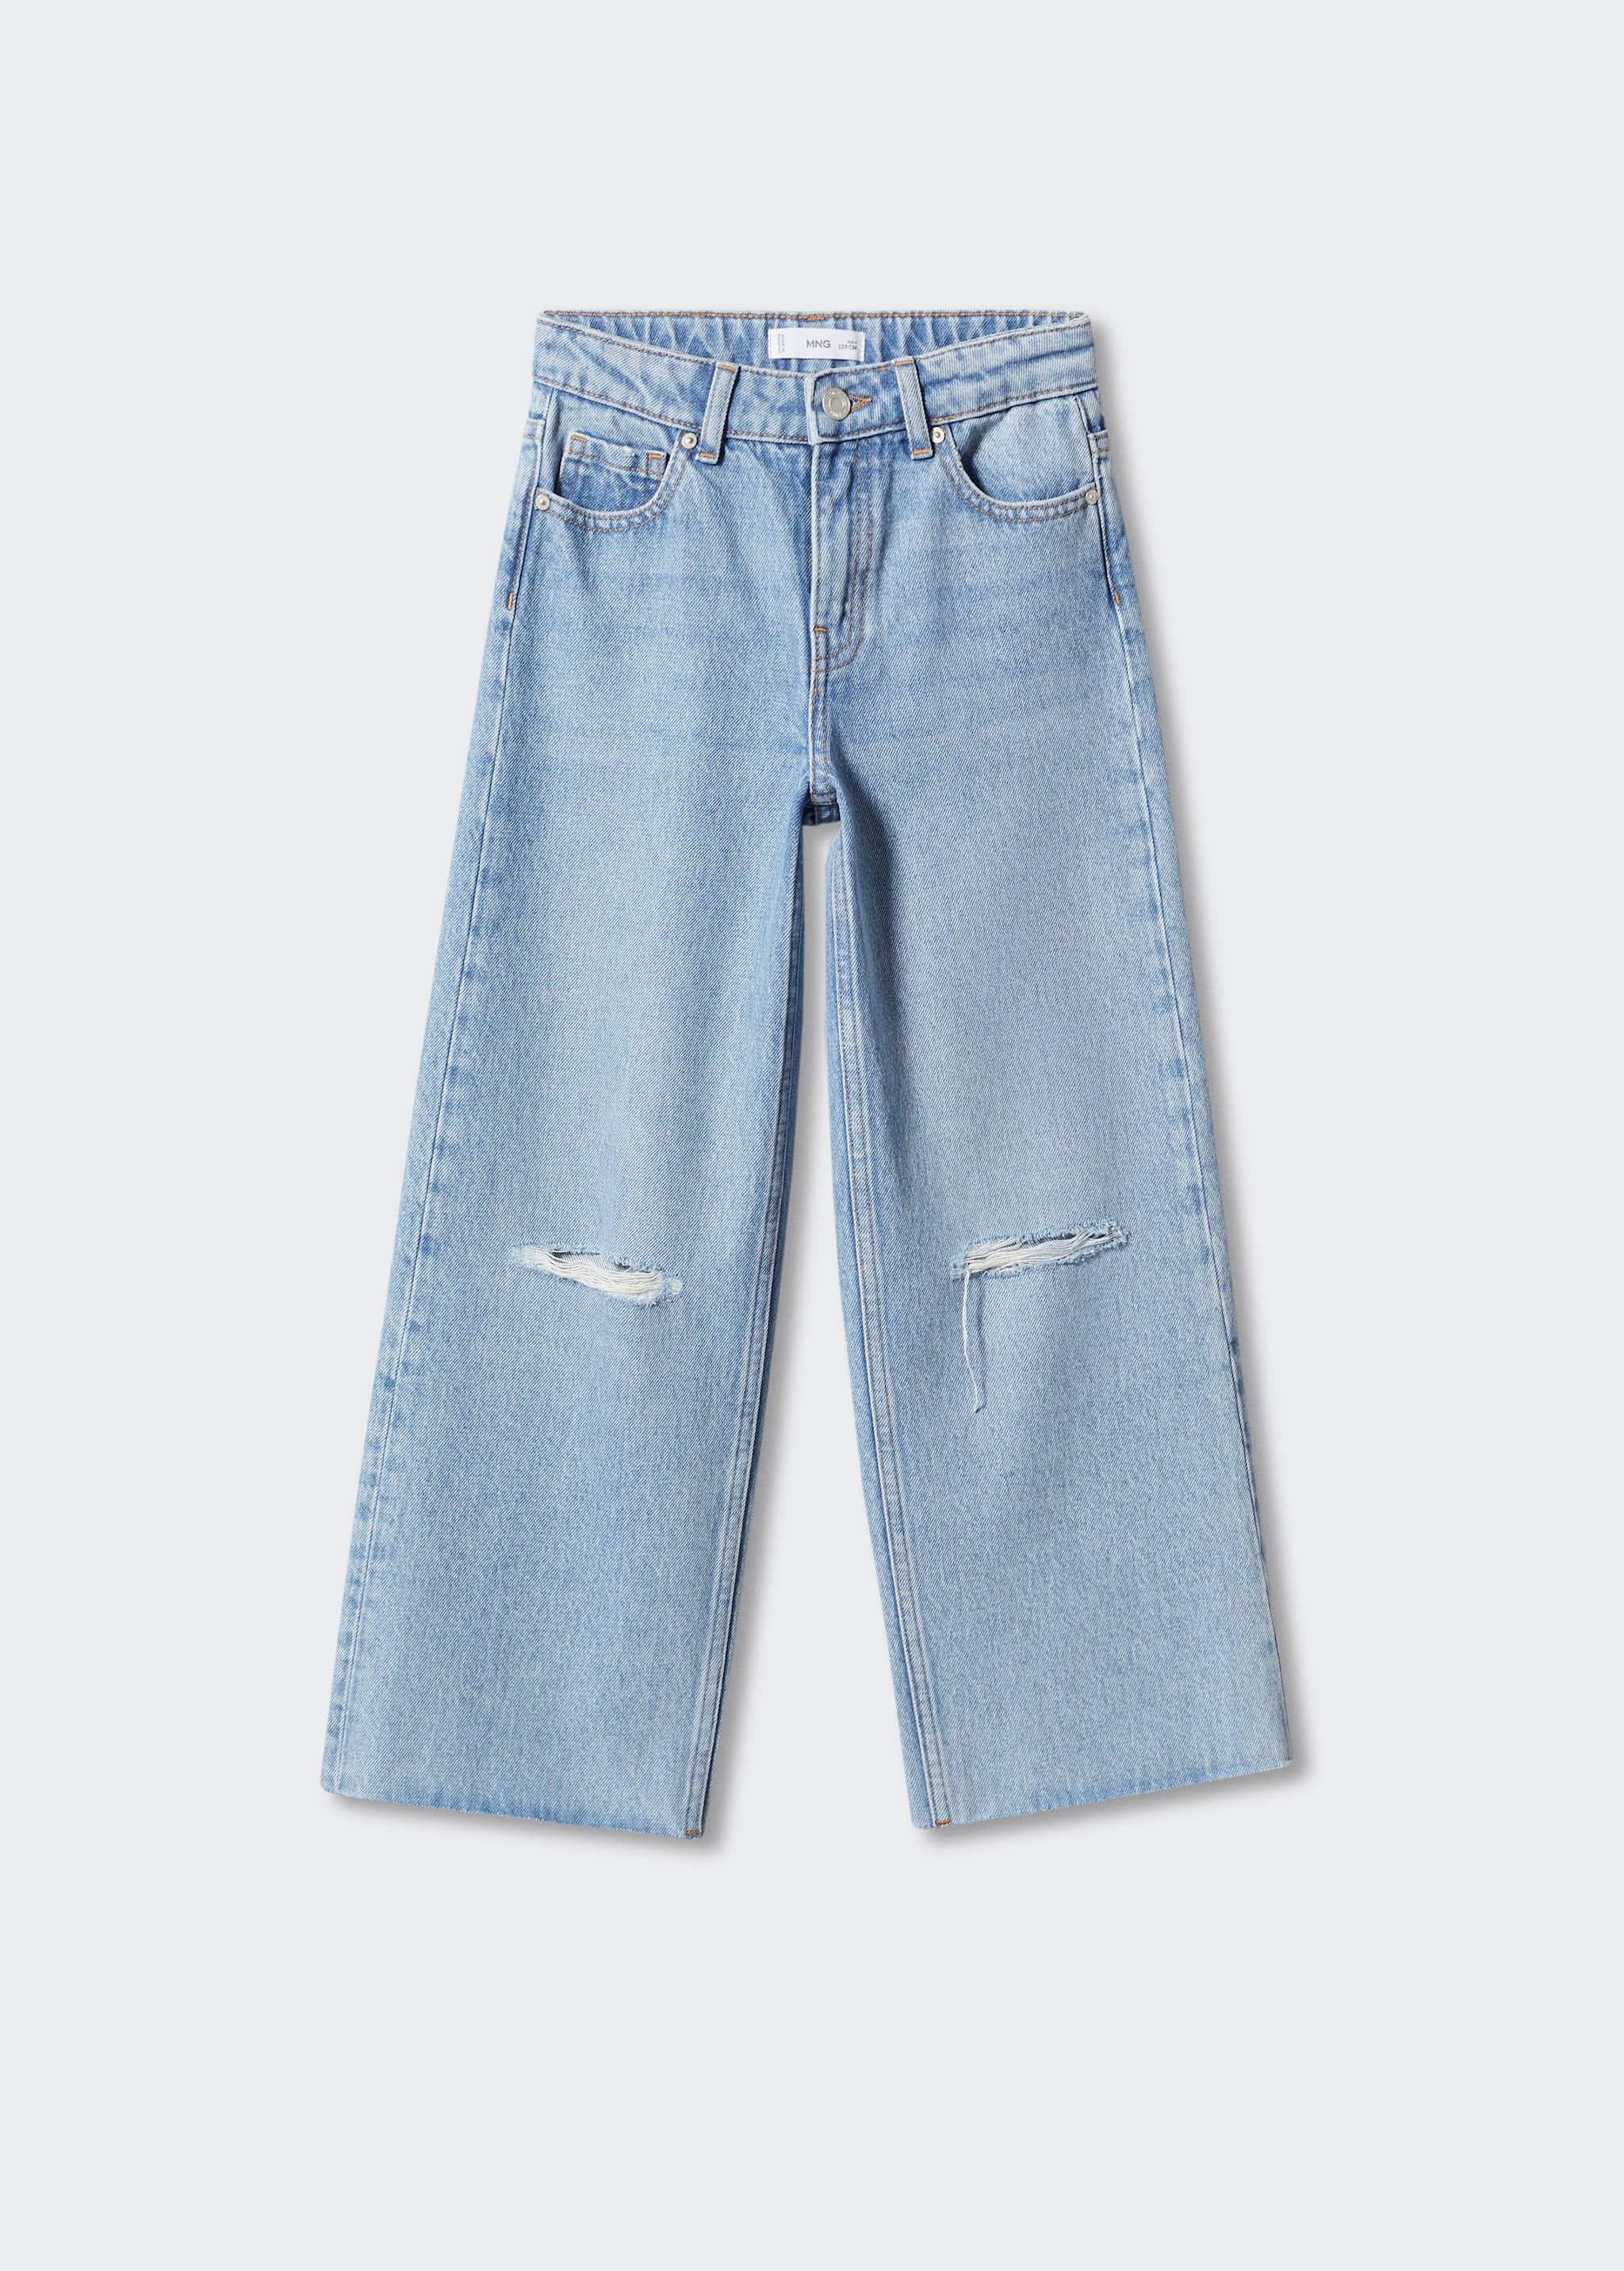 Jeans wideleg rotos decorativos - Artículo sin modelo